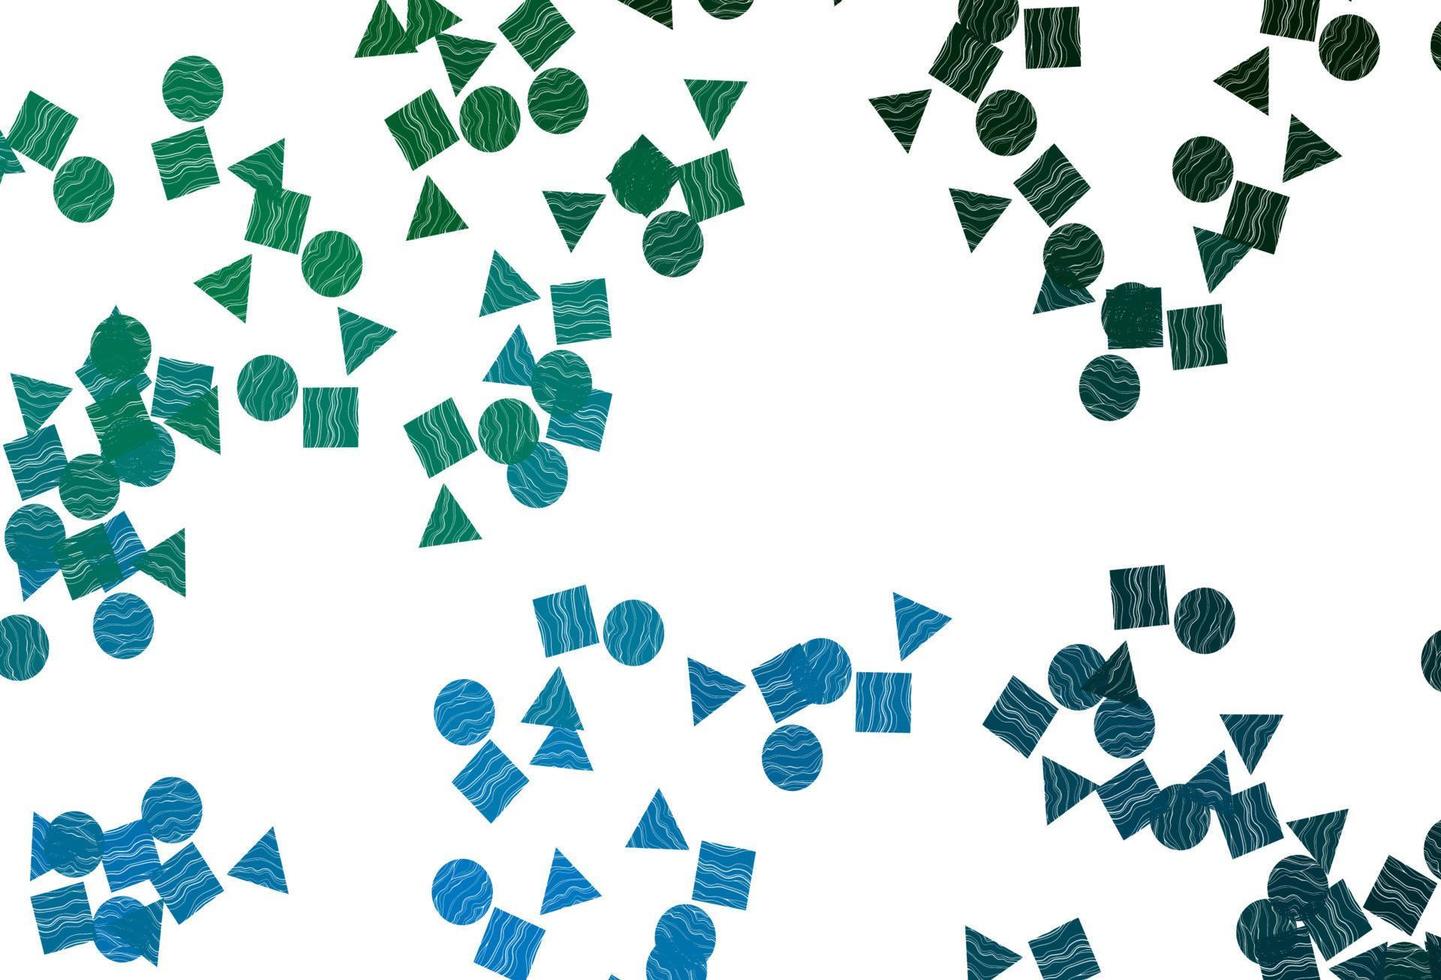 ljusblå, grön vektor bakgrund med linjer, cirklar, rhombus.